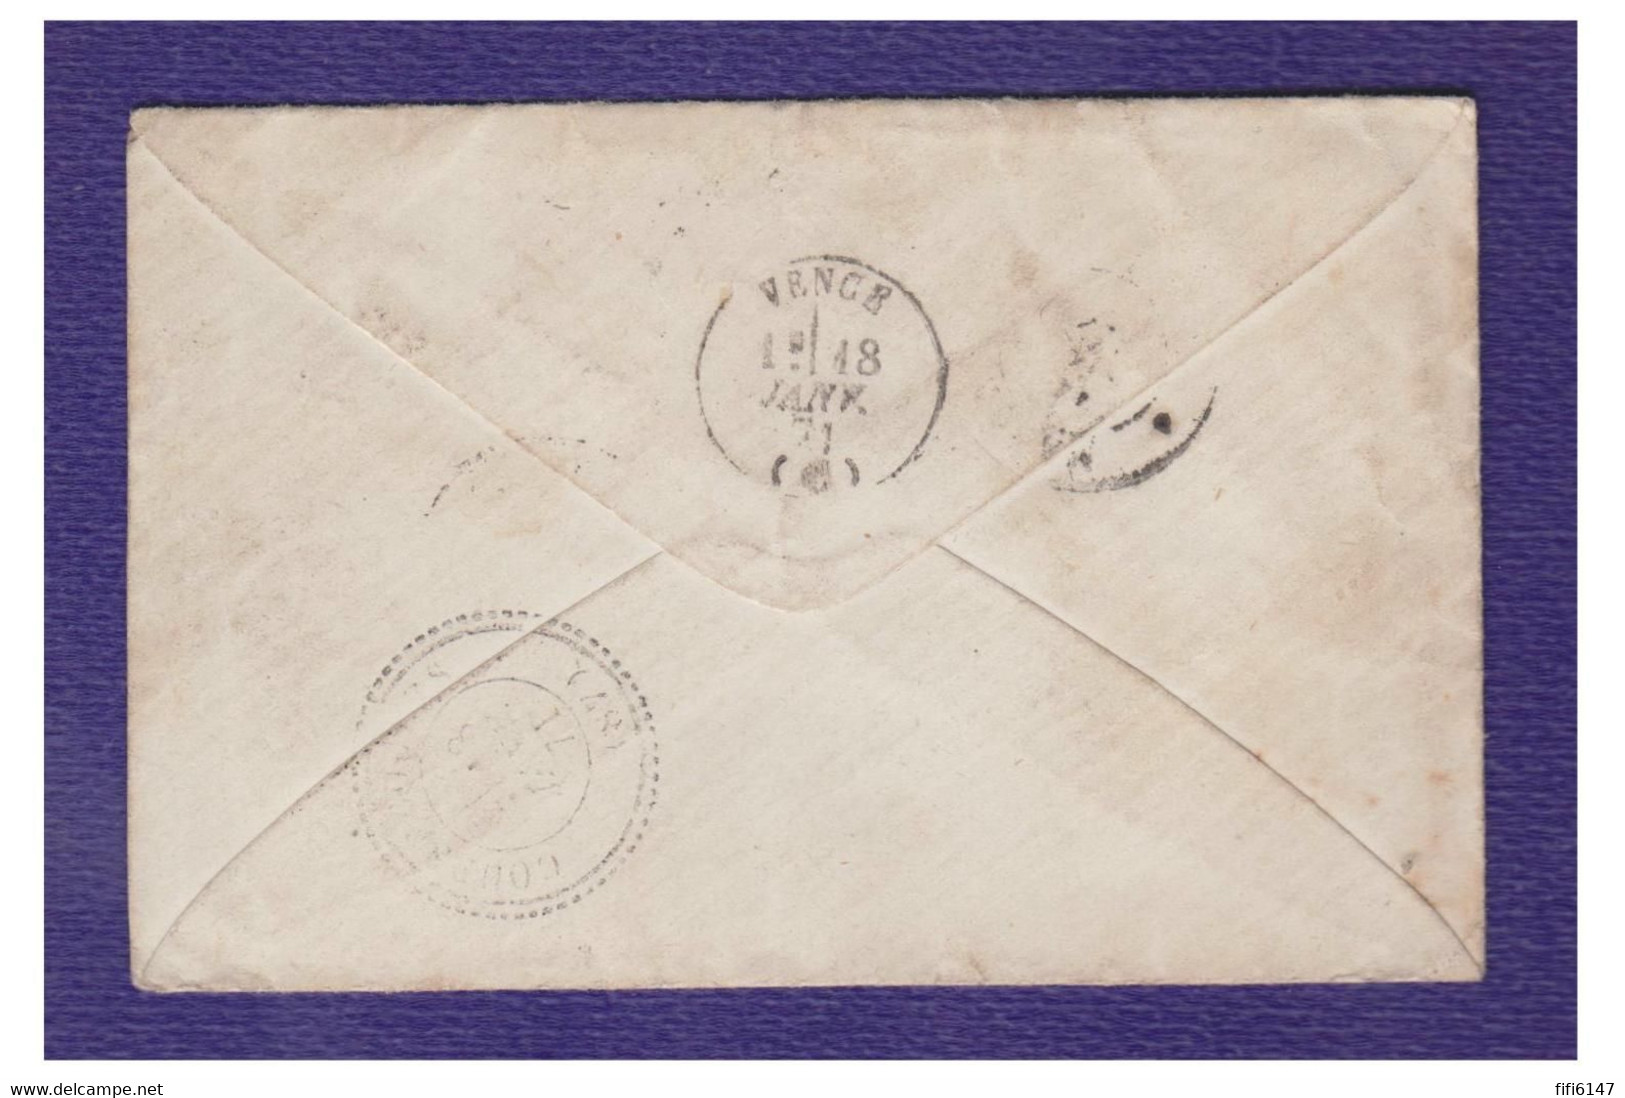 FRANCE -- GUERRE DE 70-- Lettre En Port Payé --Garde Mobile -- De DIJON Pour COURSEGOULES 06-- - Guerre De 1870